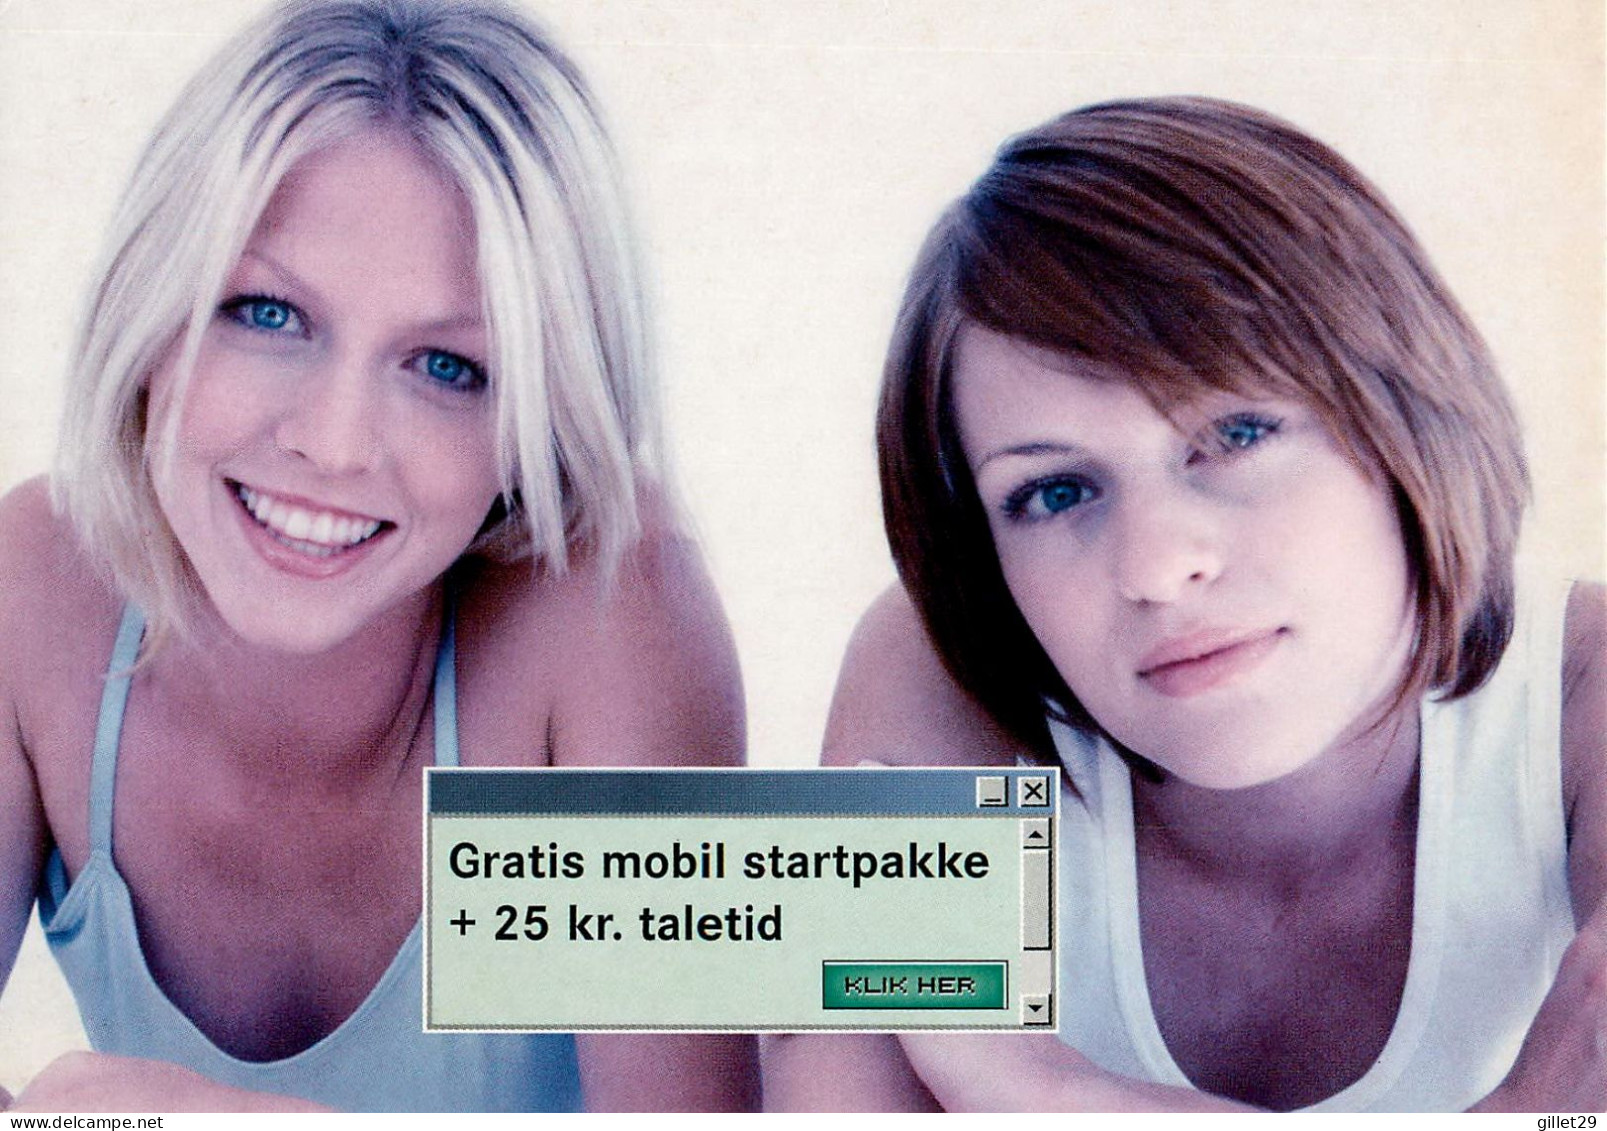 ADVERTISING, PUBLICITÉ - VOULEZ-VOUS UN FORFAIT DE DÉMARRAGE MOBILE GRATUIT - GO-CARD 2003 No 6907 - - Werbepostkarten